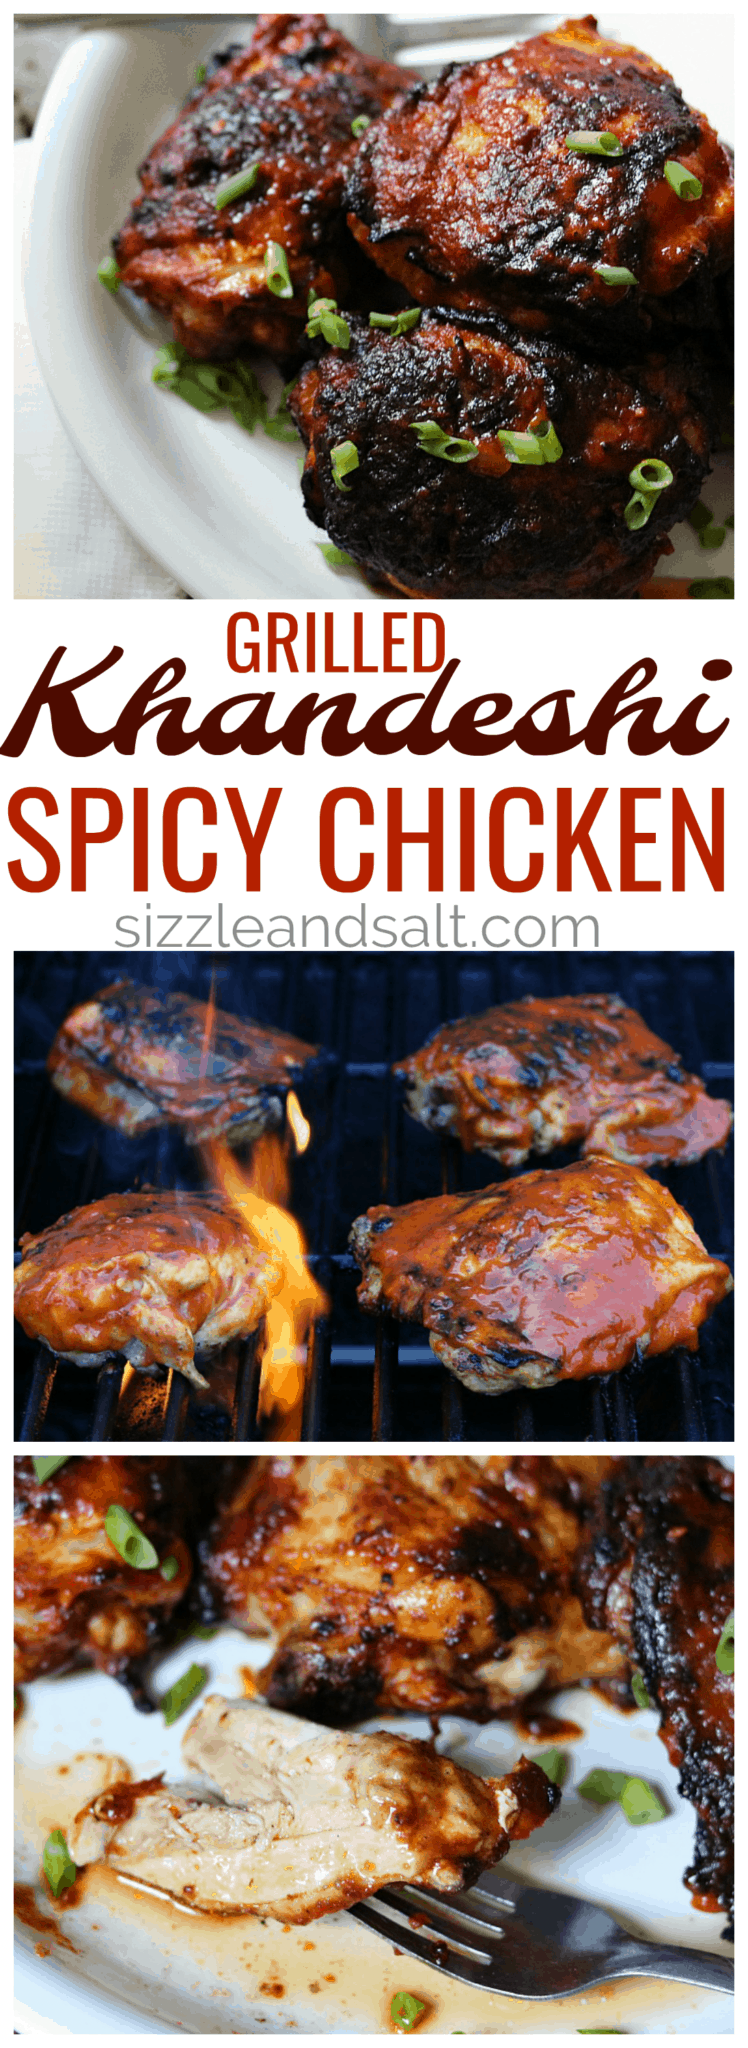 khandeshi spicy chicken 